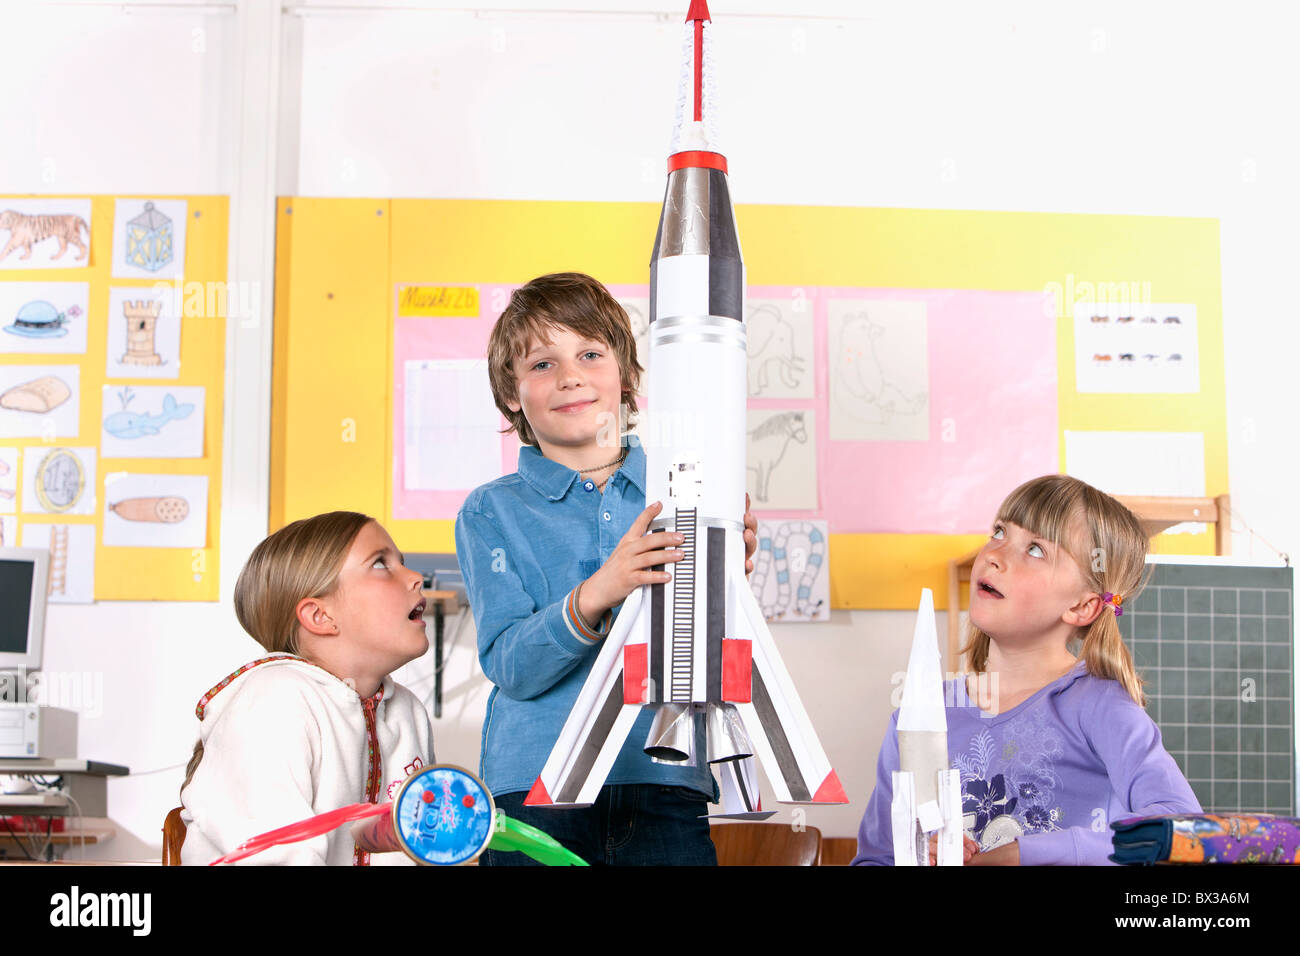 kleiner Junge im Klassenzimmer, Modell der Rakete Stockfoto